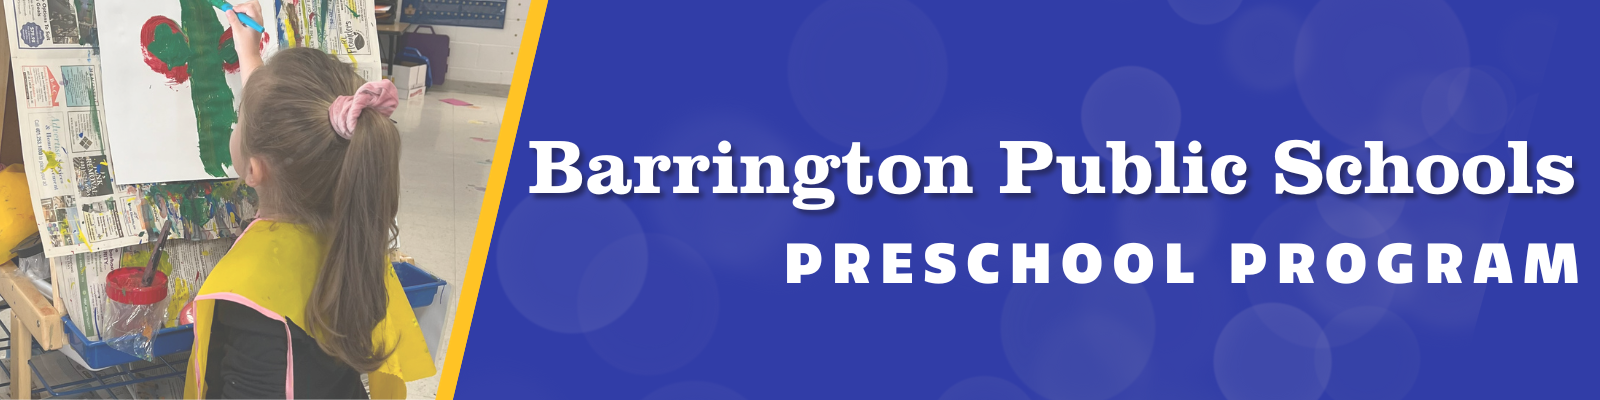 barrington public schools preschool program